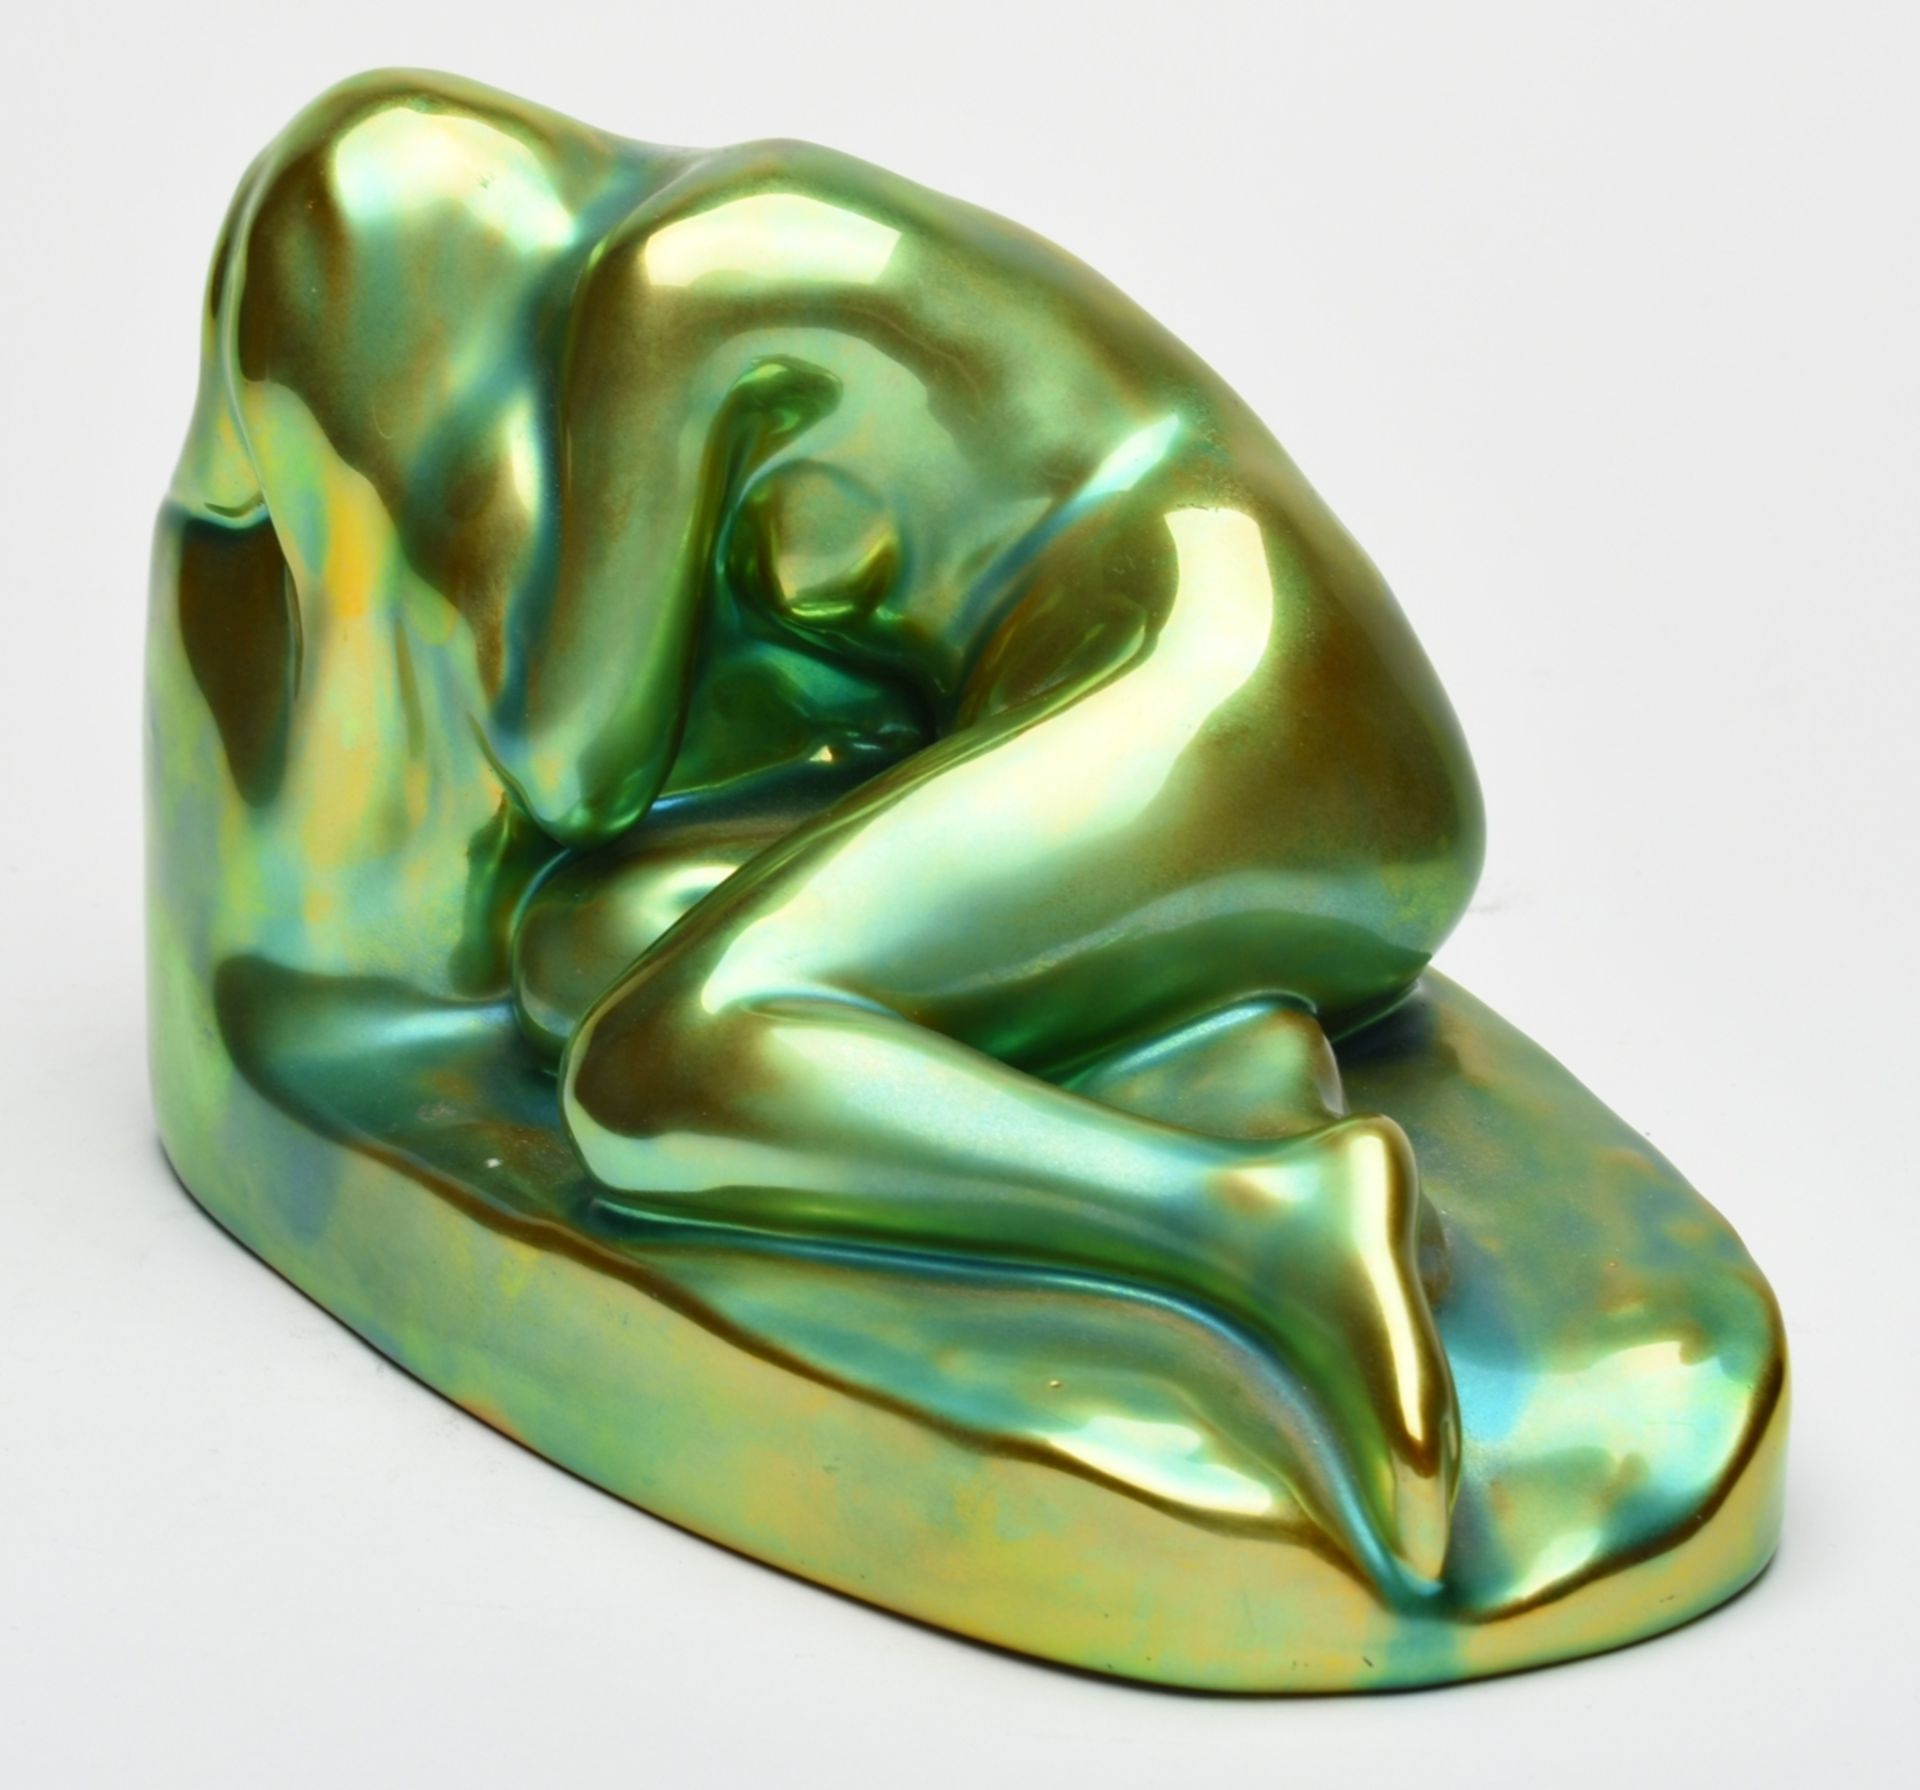 Aktfigur Hersteller: Zsolnay, Pecs/Ungarn, Keramik, in leuchtendem Grün-Gelb glasiert, liegender - Bild 3 aus 4